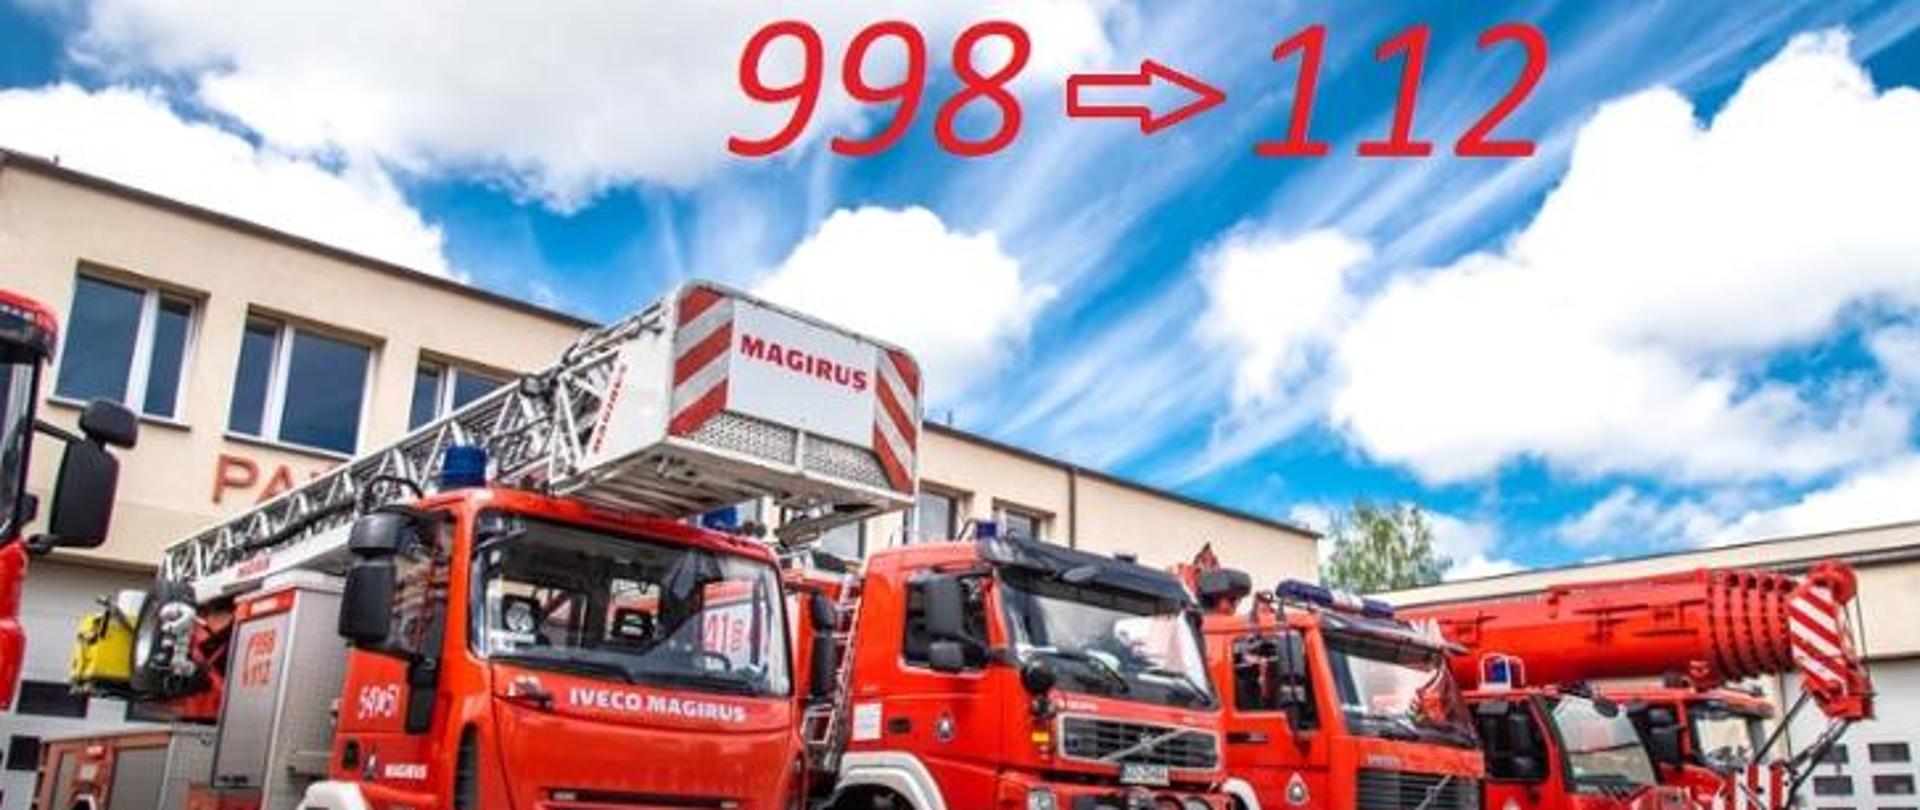 Grafika symbolizująca przełączanie numeru alarmowego 998 na 112, przedstawia pojazdy pożarnicze przez budynkiem strażnicy, nad pojazdami nadrukowane numery alarmowe 998 i 112 z strzałką symbolizującą przełączenie. 